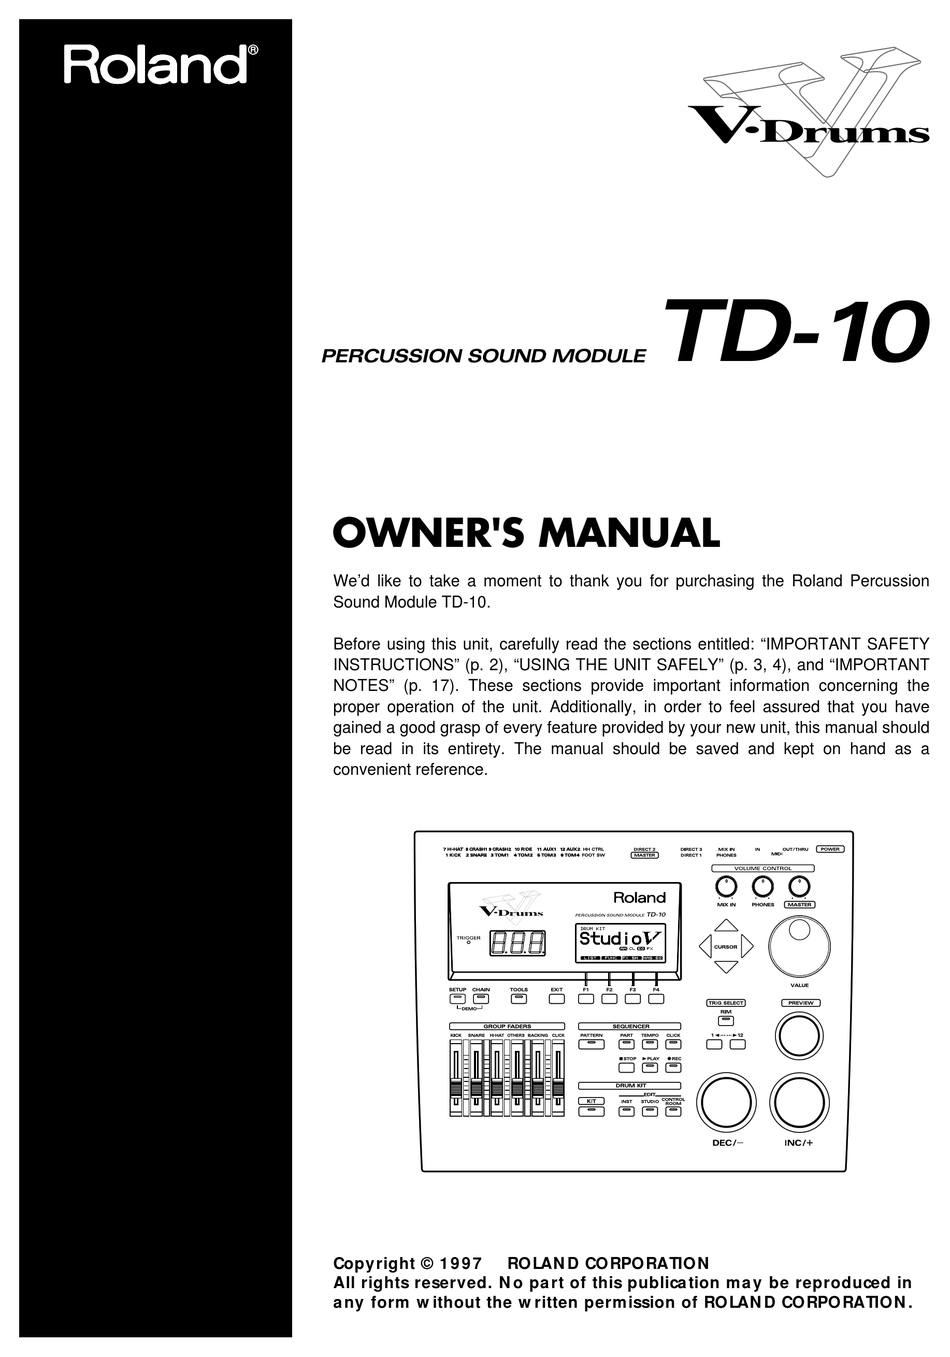 ROLAND V-DRUMS TD-10 OWNER'S MANUAL Pdf Download | ManualsLib